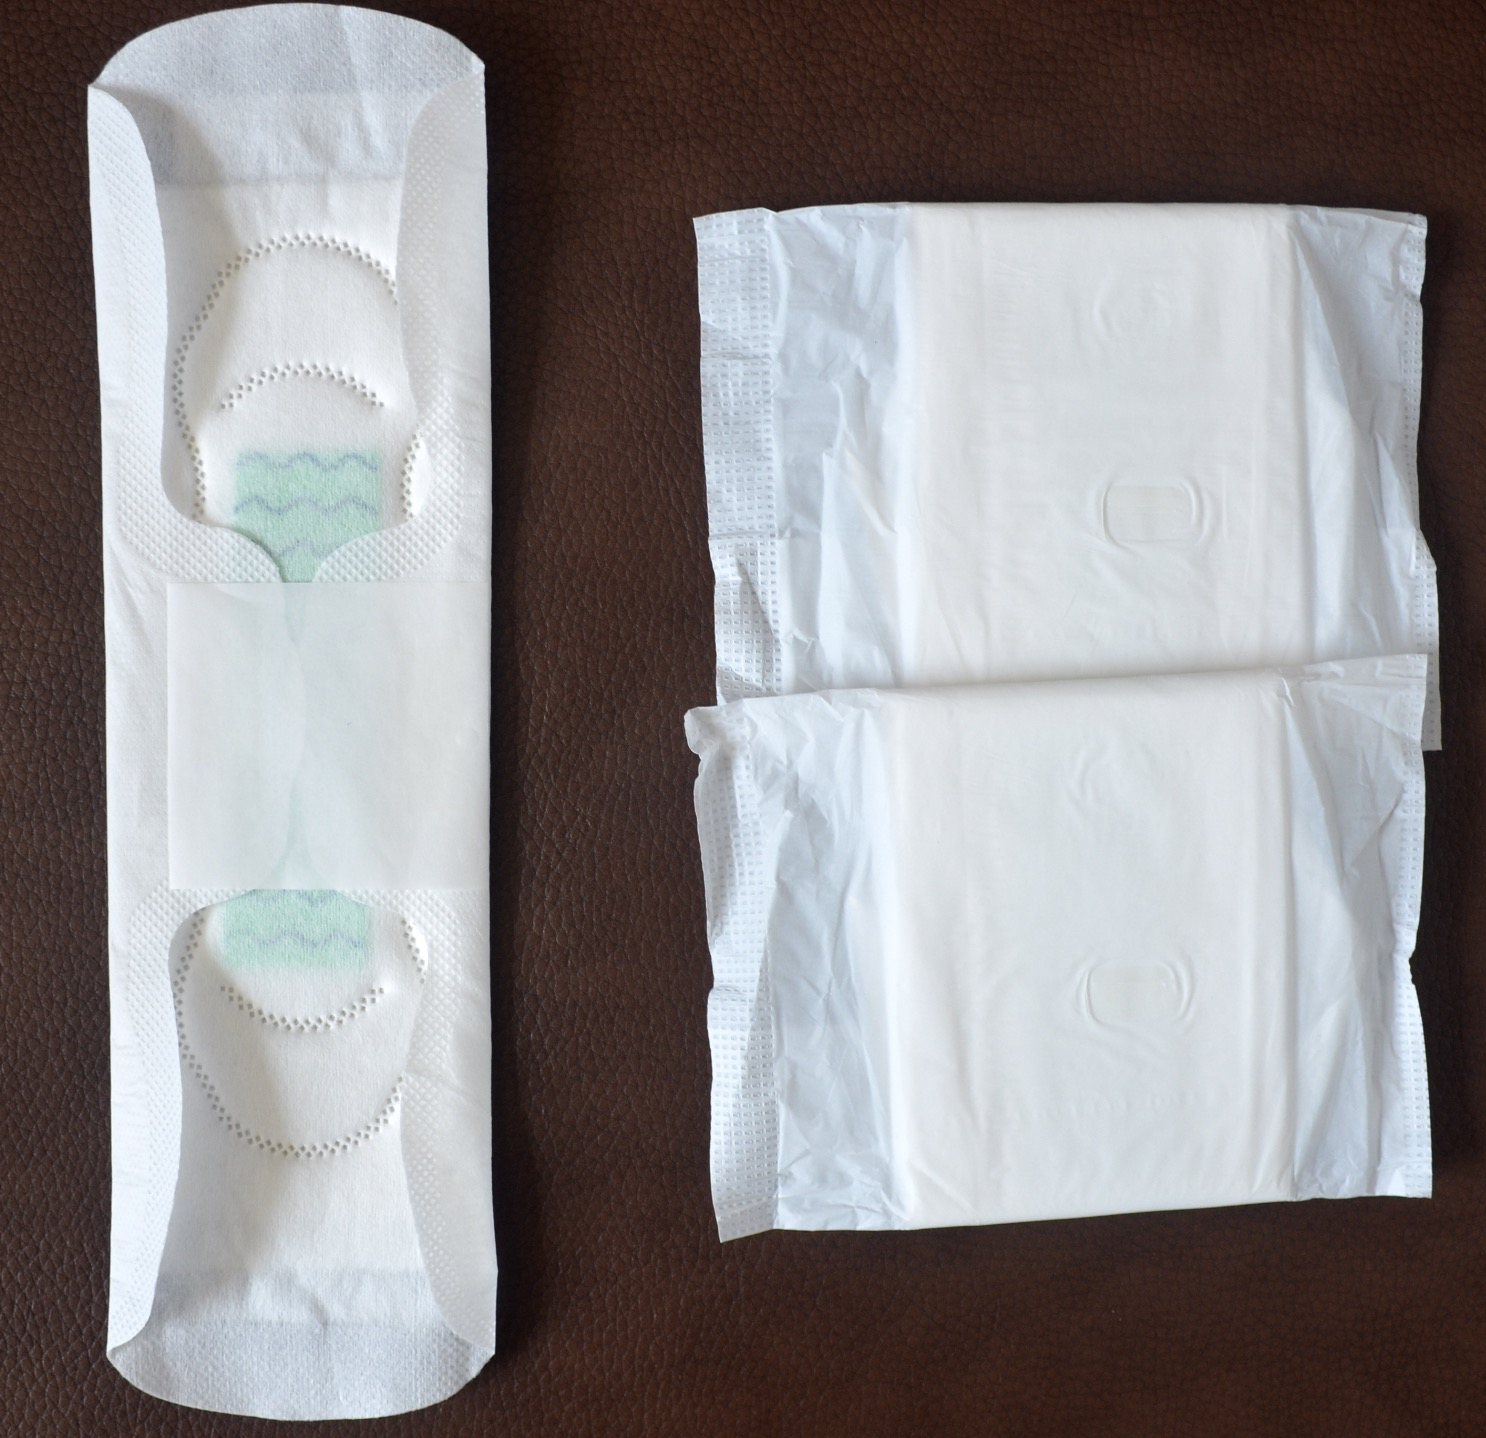 Almofada de período de algodão orgânico para senhoras de marca personalizada almofada descartável para uso diário super absorventes higiênicos